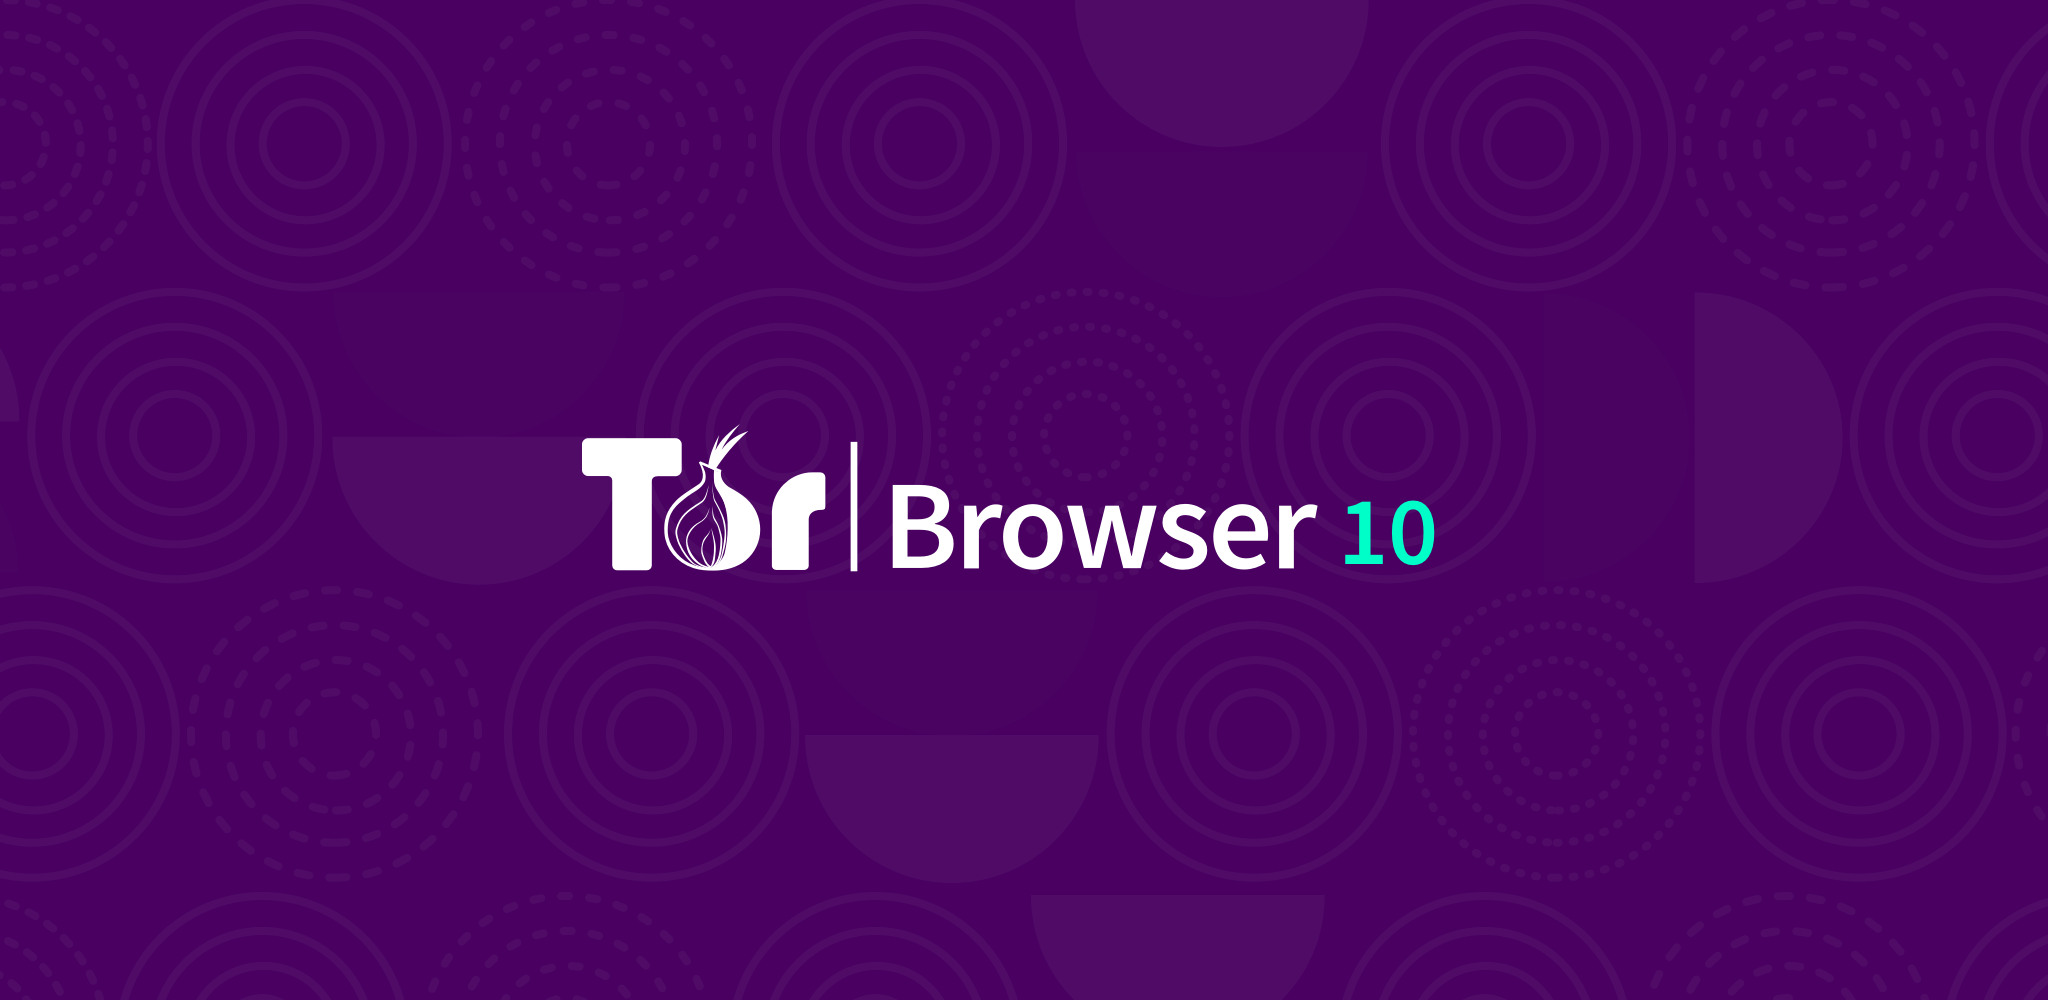 Tor browser скрин mega скачать тор лук браузер mega2web